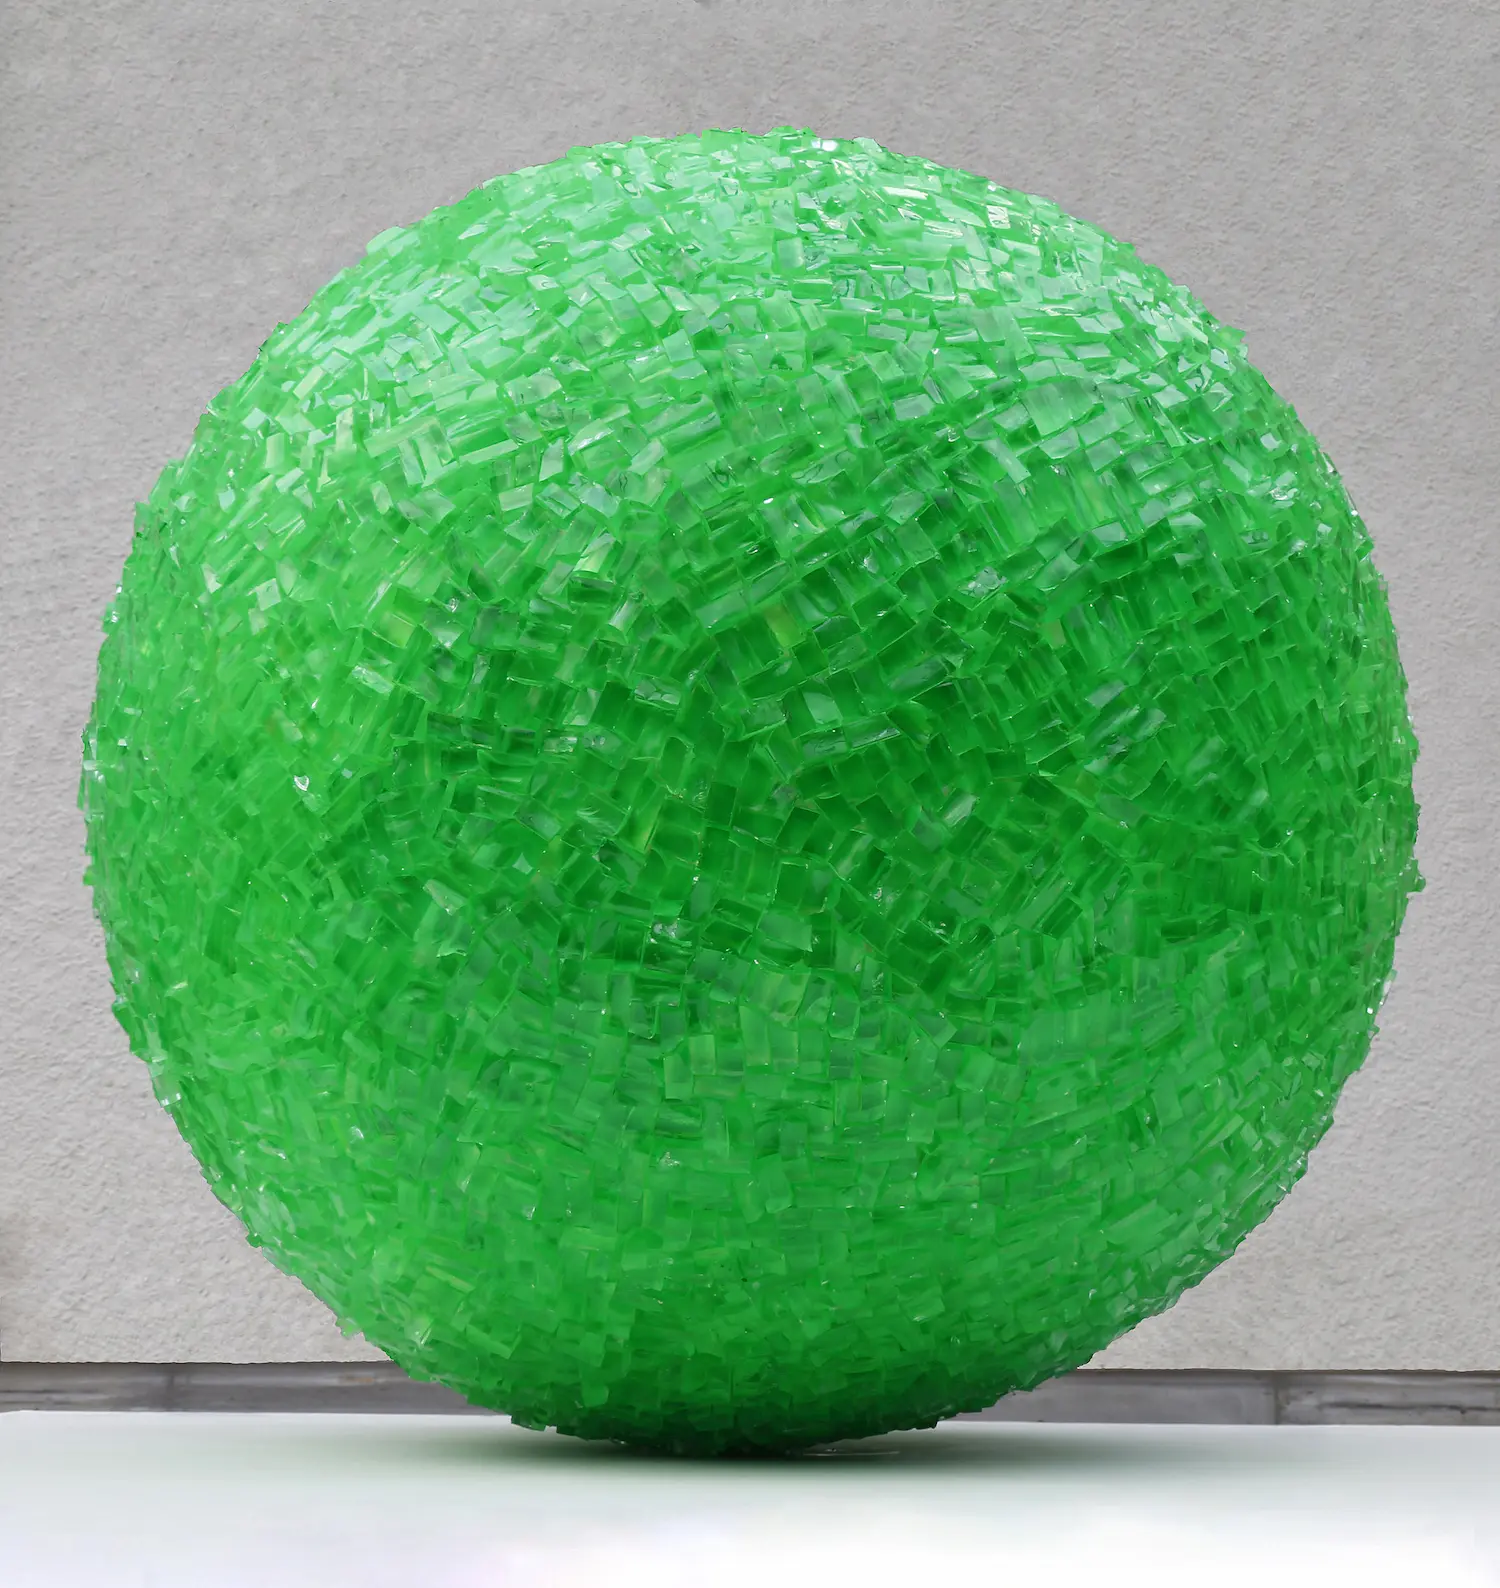 „Kugel grün“, Glas, 85 x 85 x 85 cm, 2019